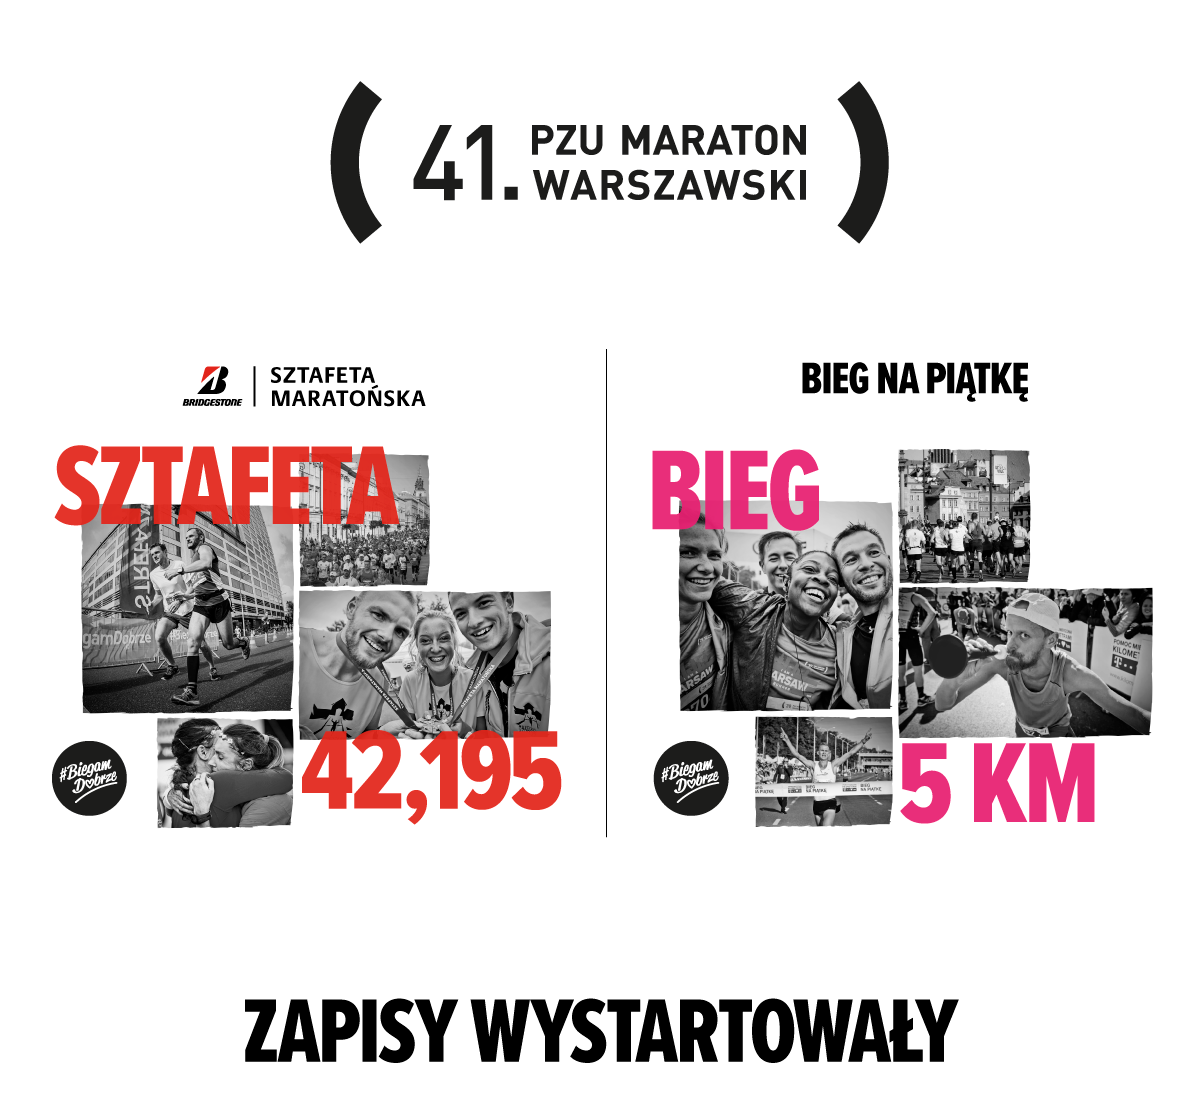 maraton warszawski